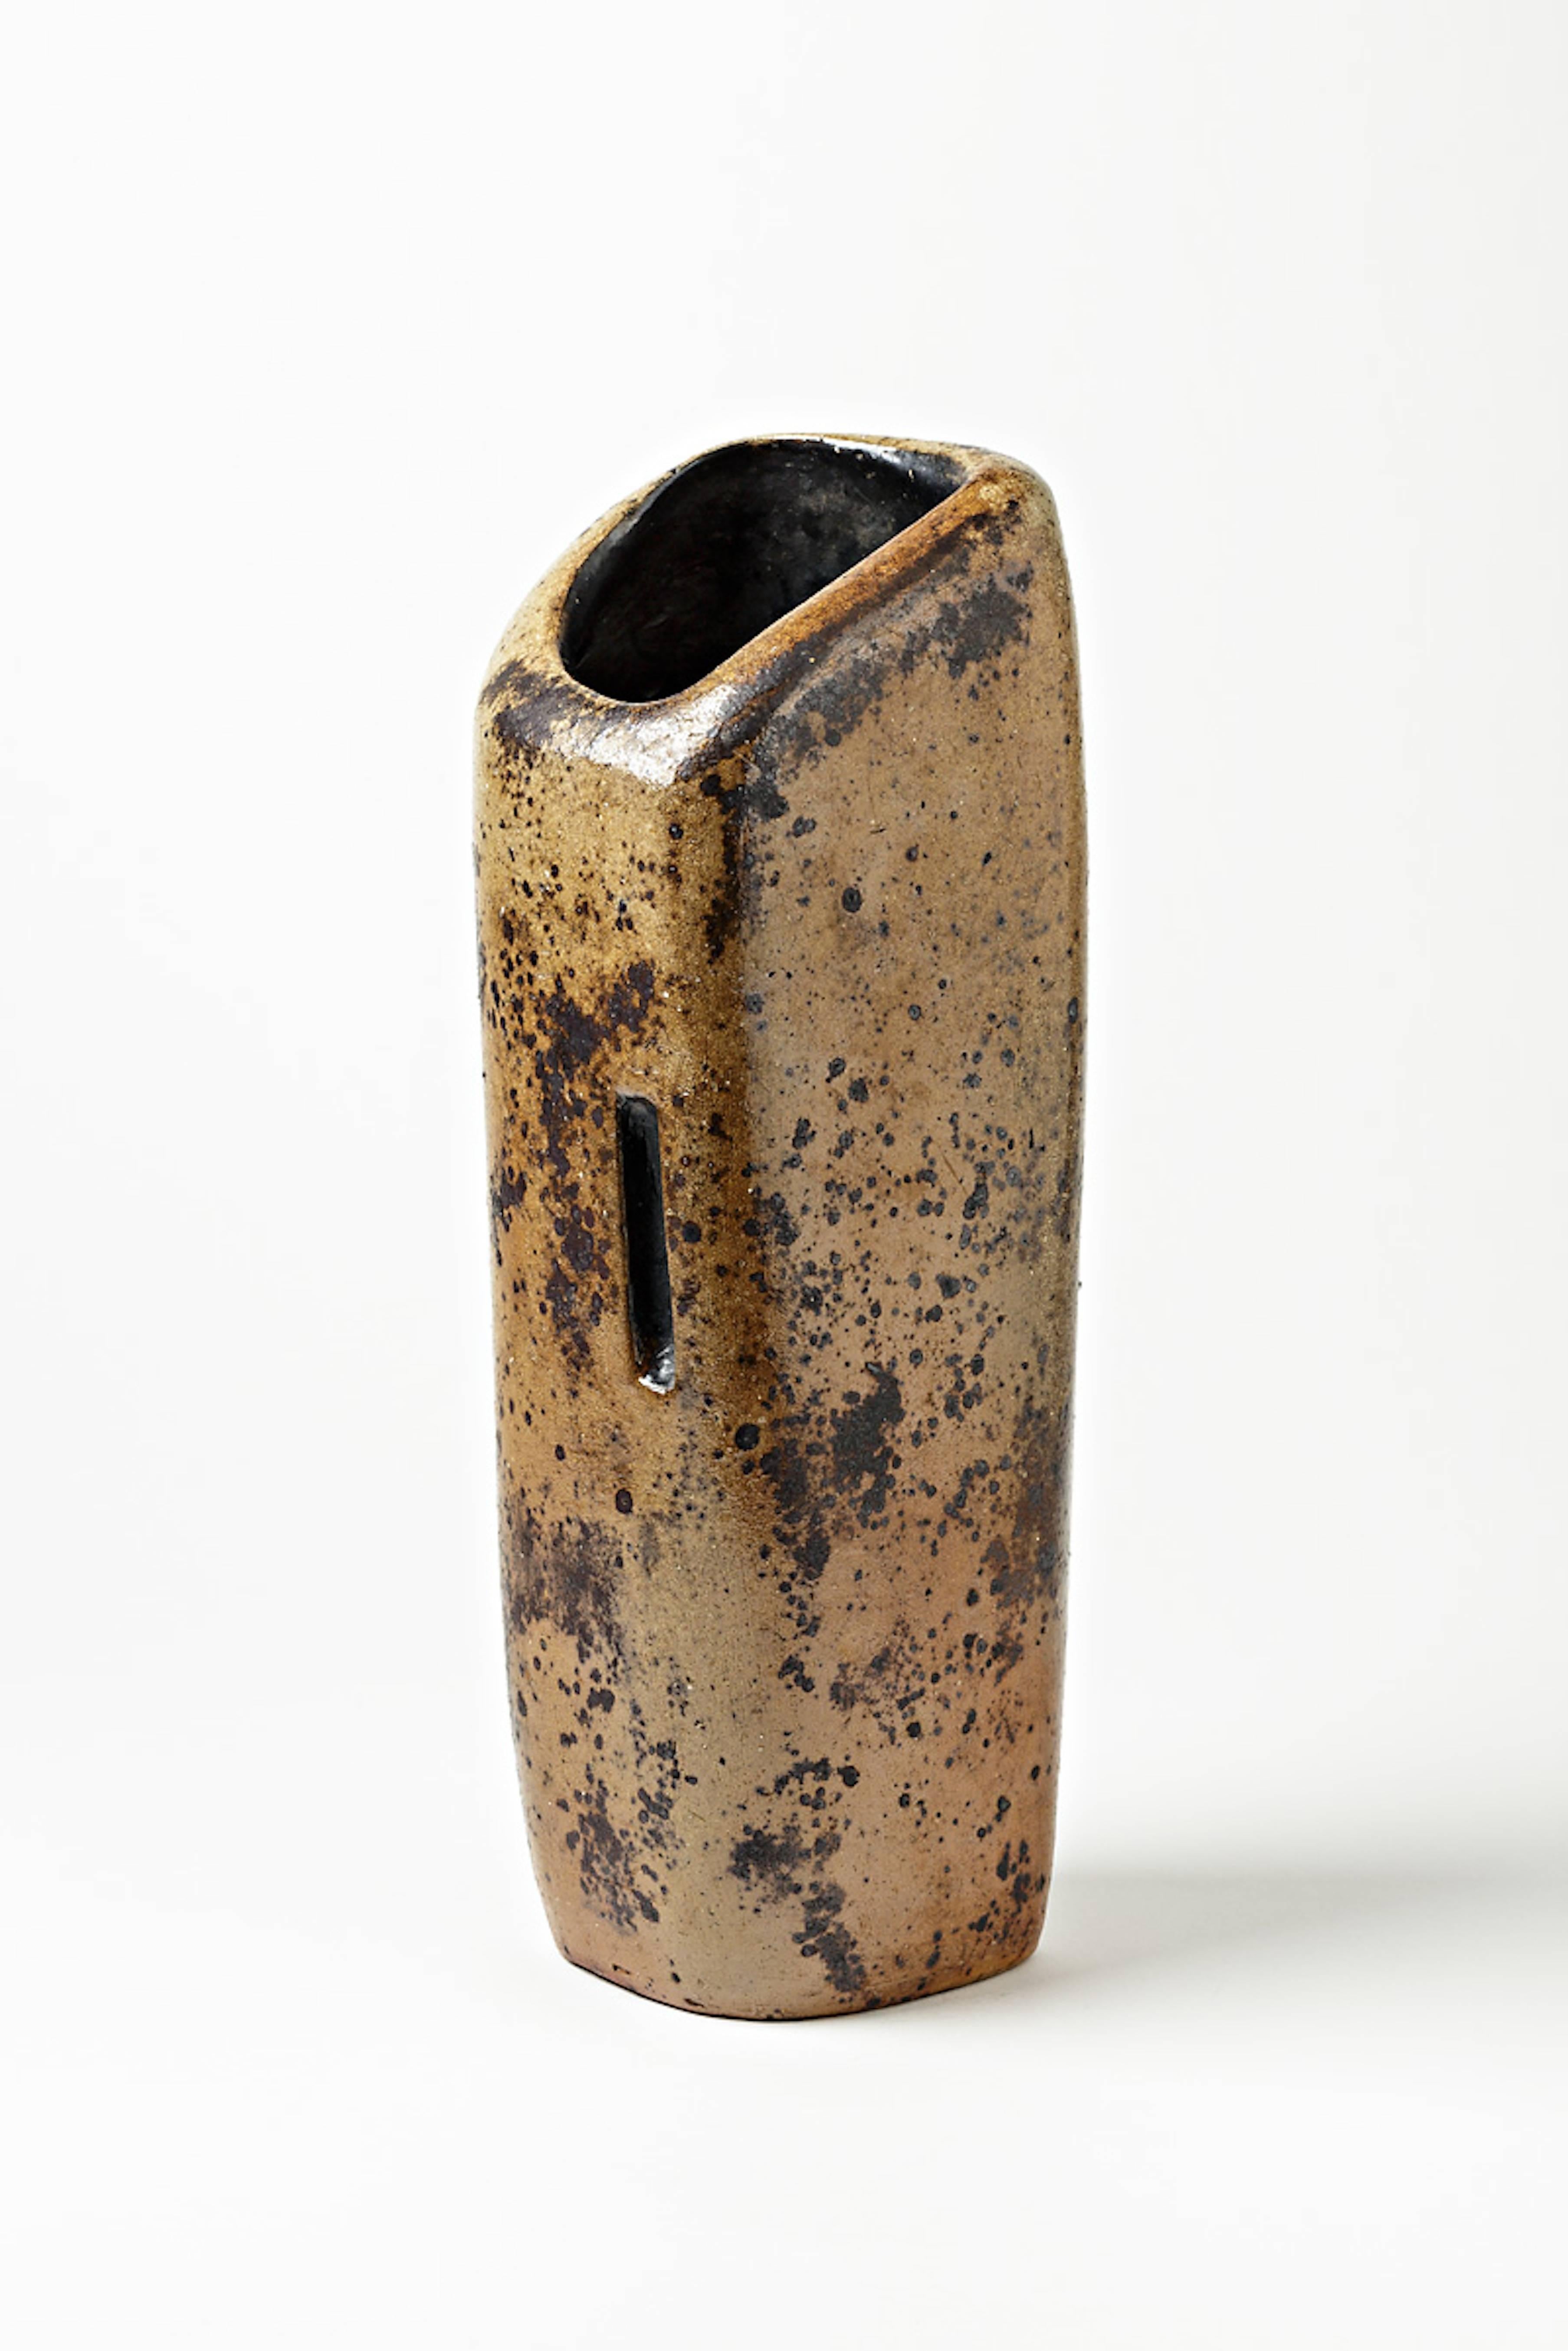 Beaux Arts Exceptional Stoneware Vase by Jean Lerat, La Borne, 1965-1970